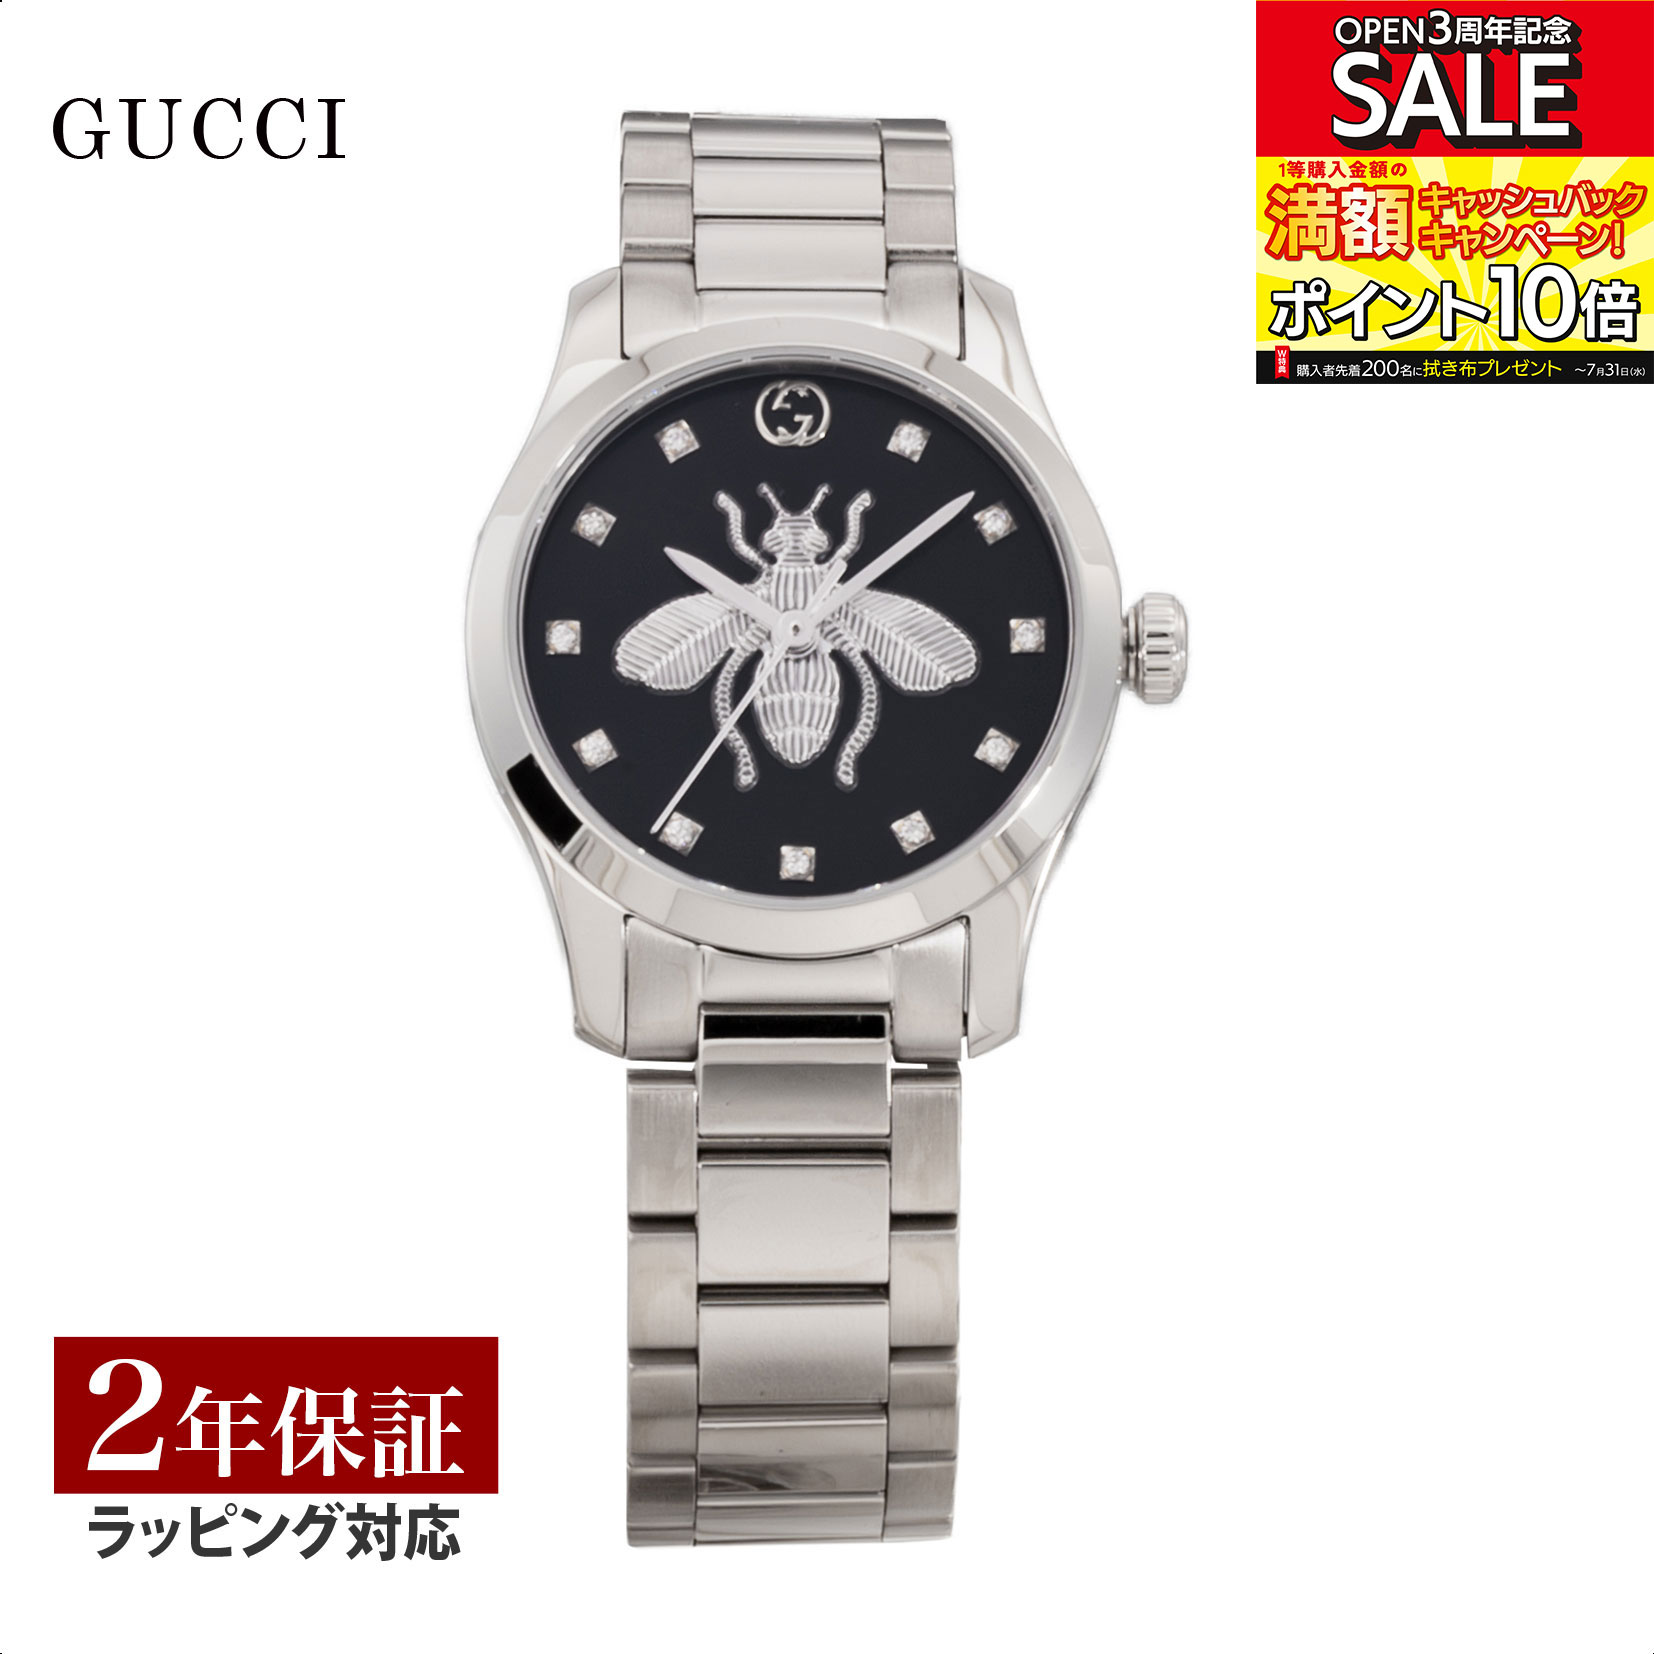 グッチ GUCCI レディース 時計 G-TIMELESS Gタイムレスクォーツ ブラック YA1265024 時計 腕時計 高級腕時計 ブランド